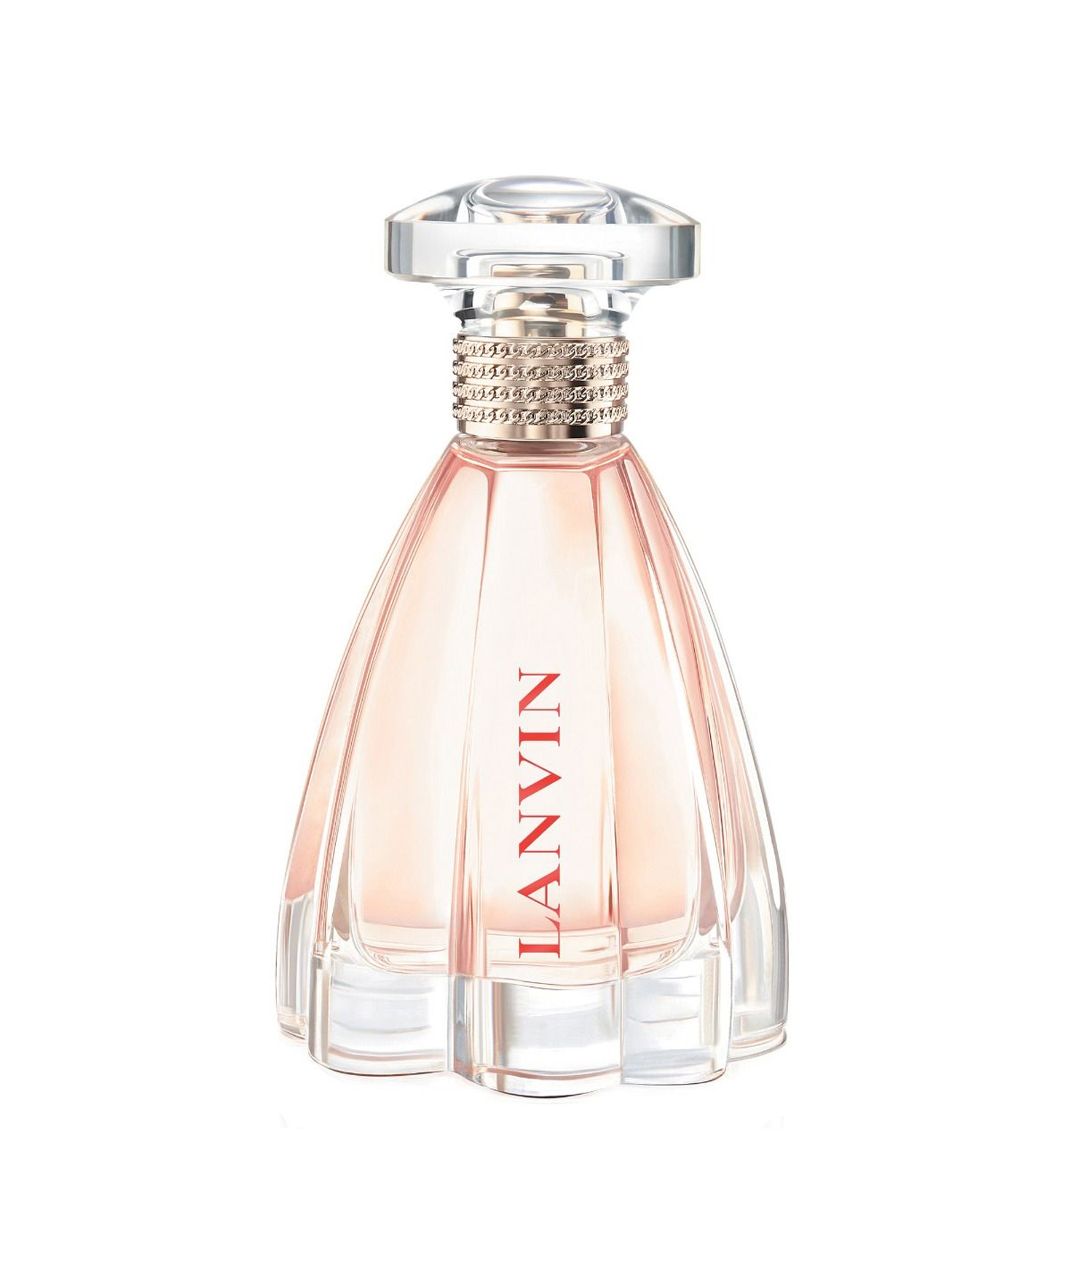 Perfume «Lanvin» Modern Princess, for women, 60 ml